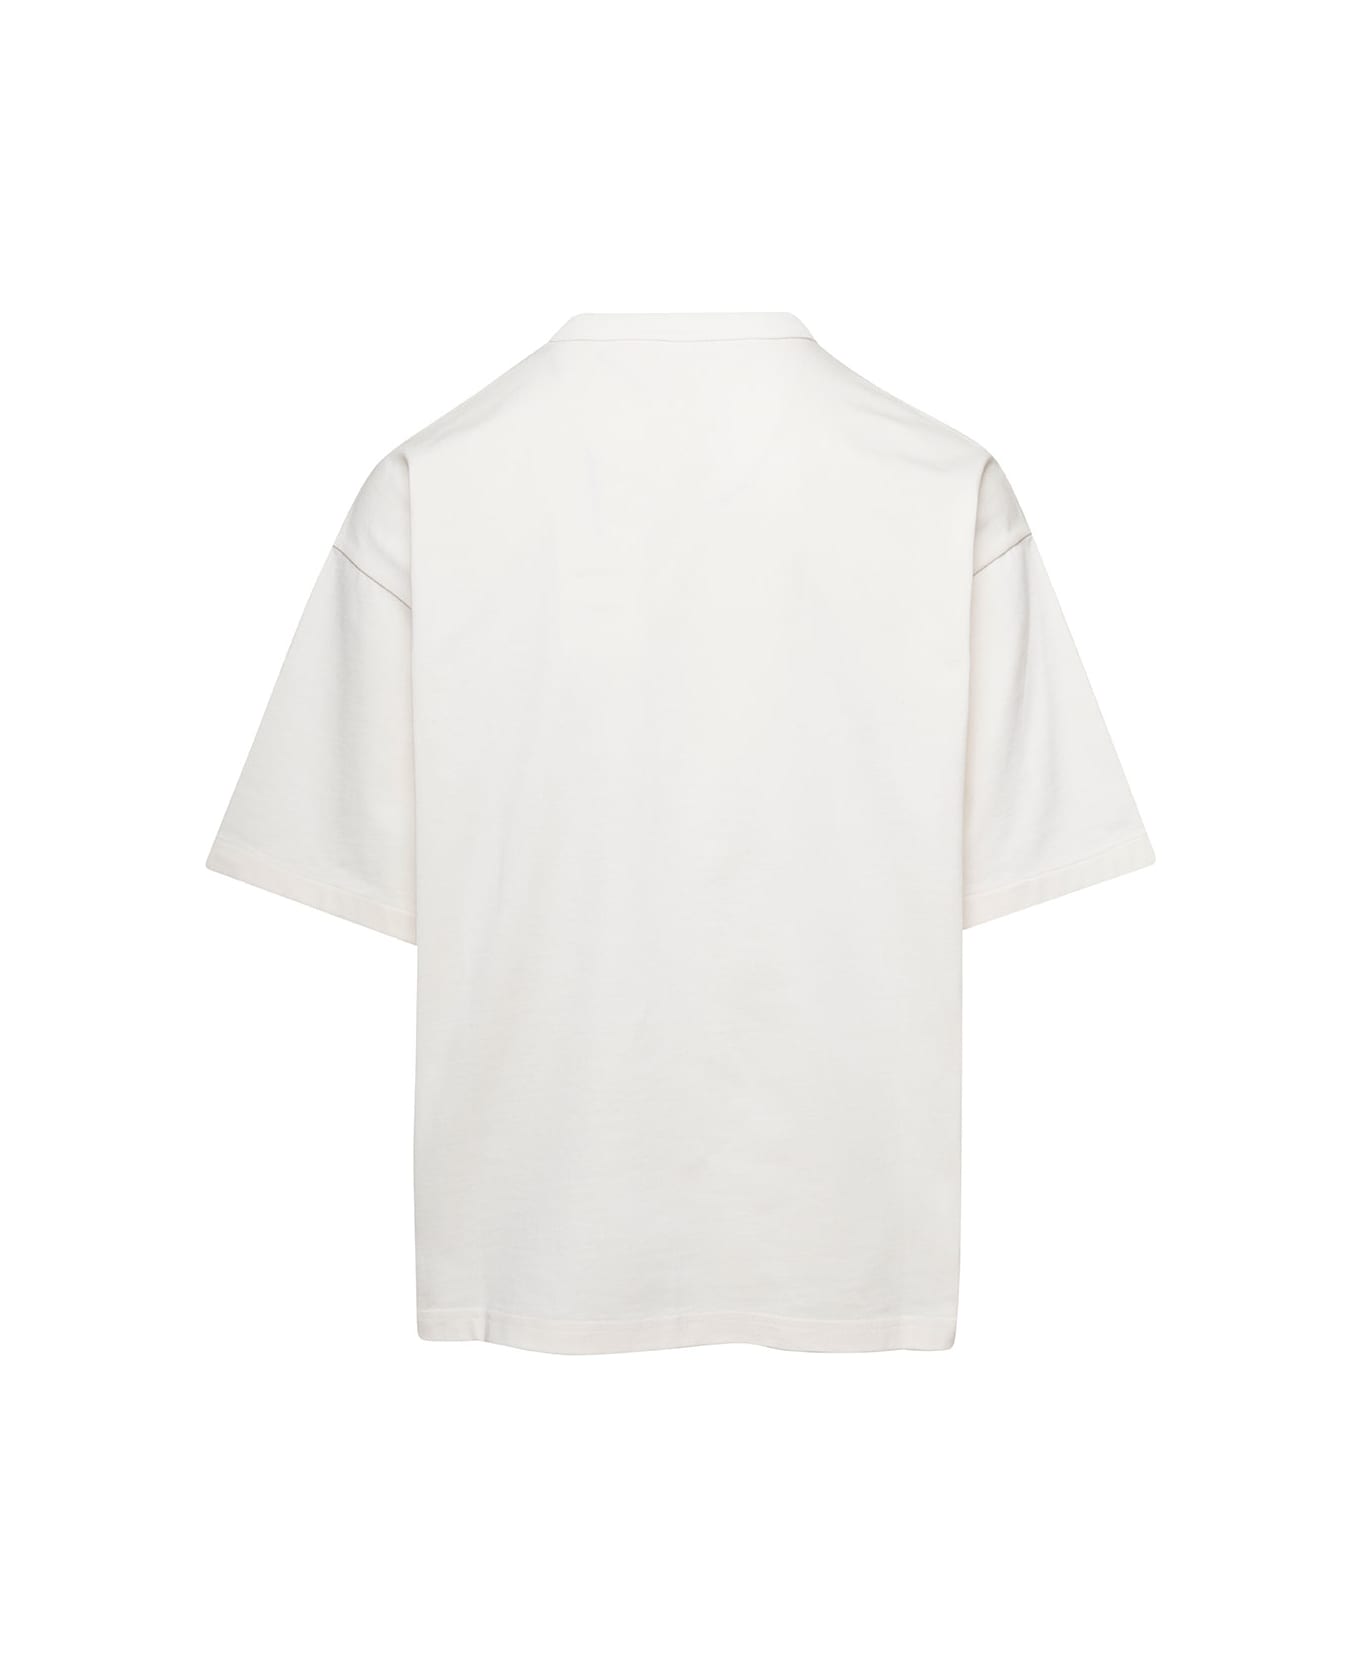 Bottega Veneta White Relaxed Fit Crewneck T-shirt In Cotton Man - White